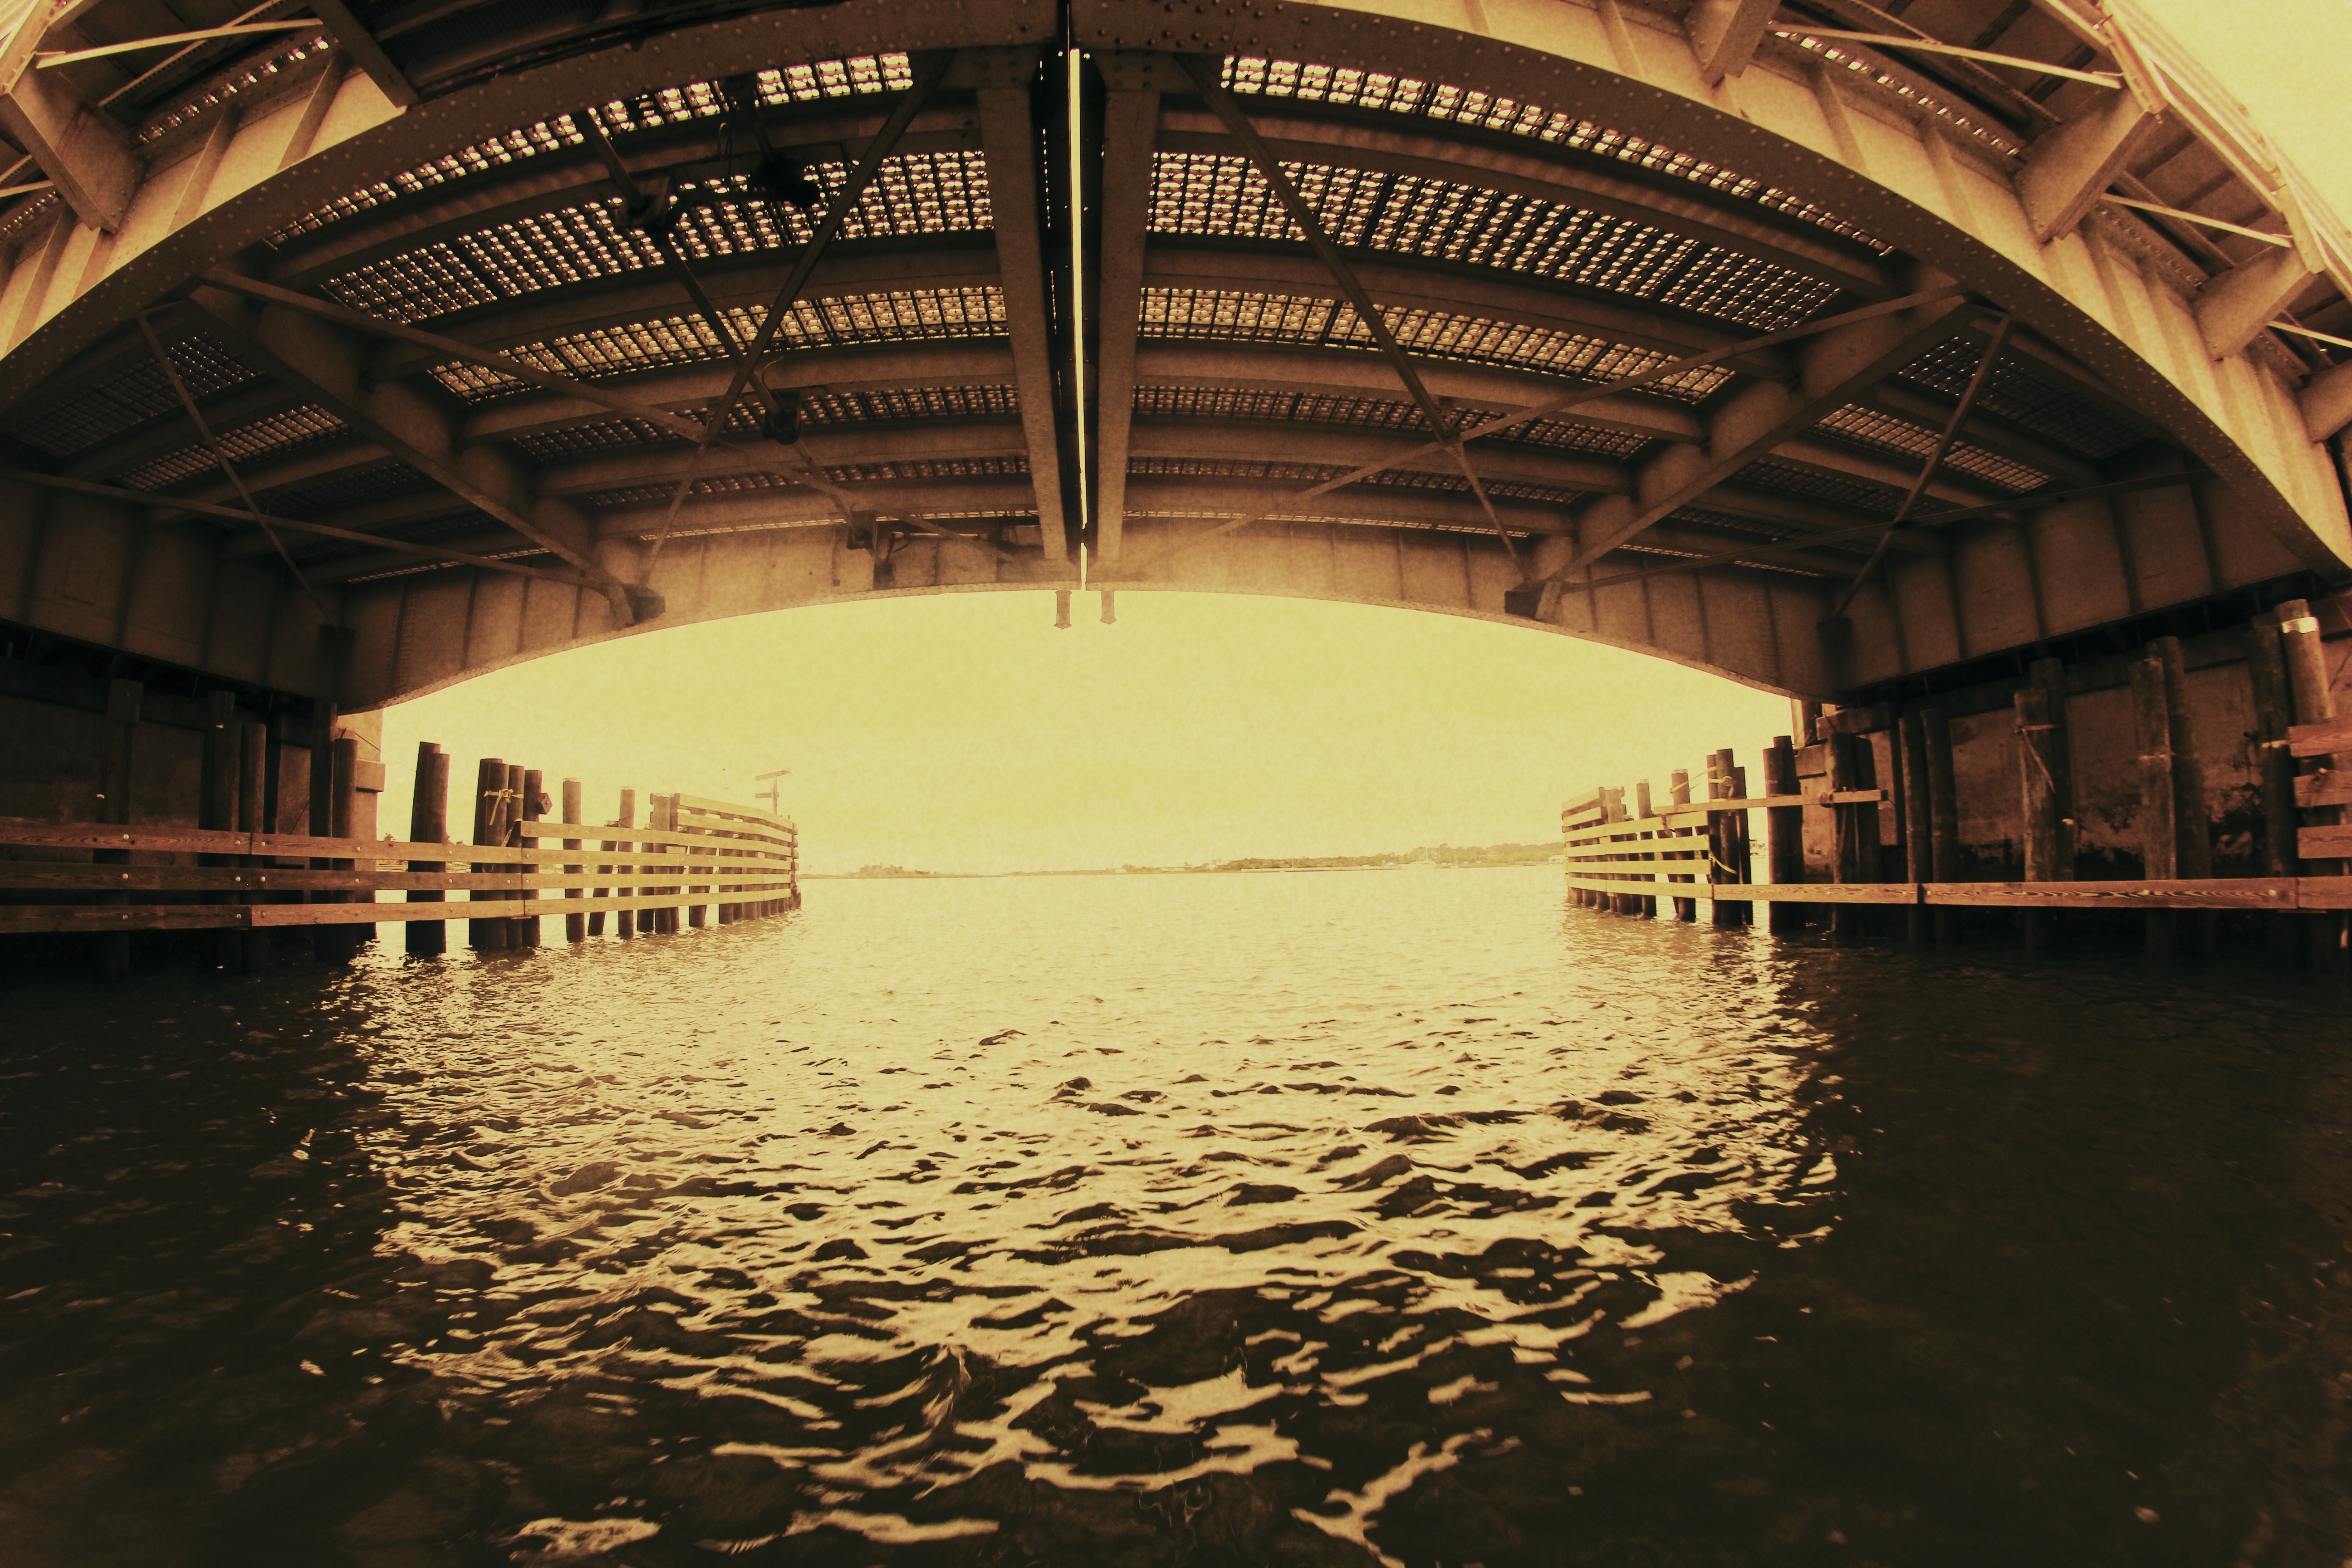 water under the bridge by denehy on DeviantArt